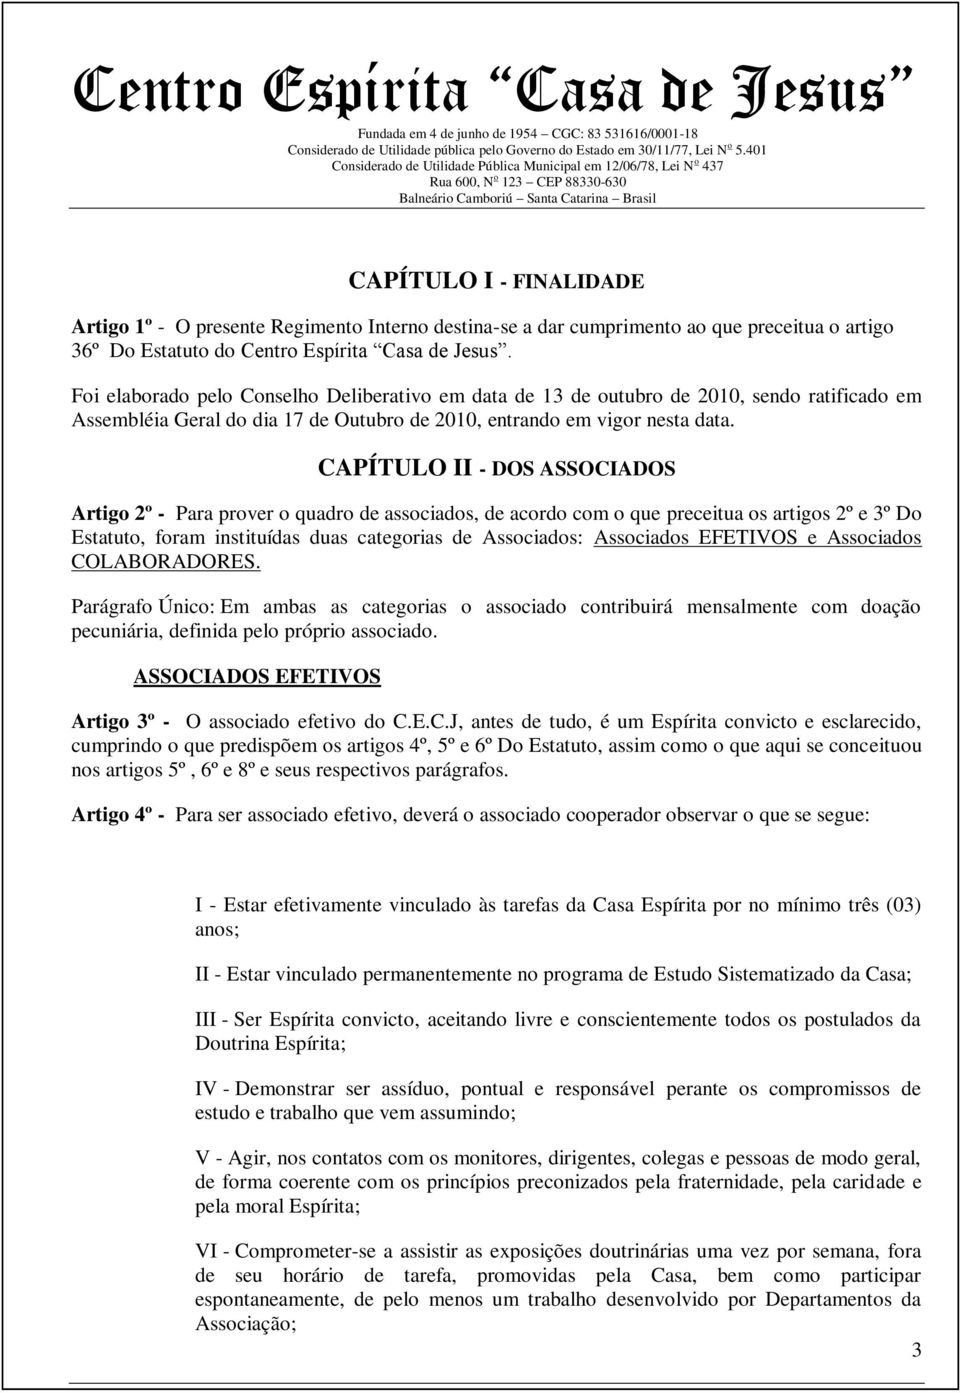 CAPÍTULO II - DOS ASSOCIADOS Artigo 2º - Para prover o quadro de associados, de acordo com o que preceitua os artigos 2º e 3º Do Estatuto, foram instituídas duas categorias de Associados: Associados